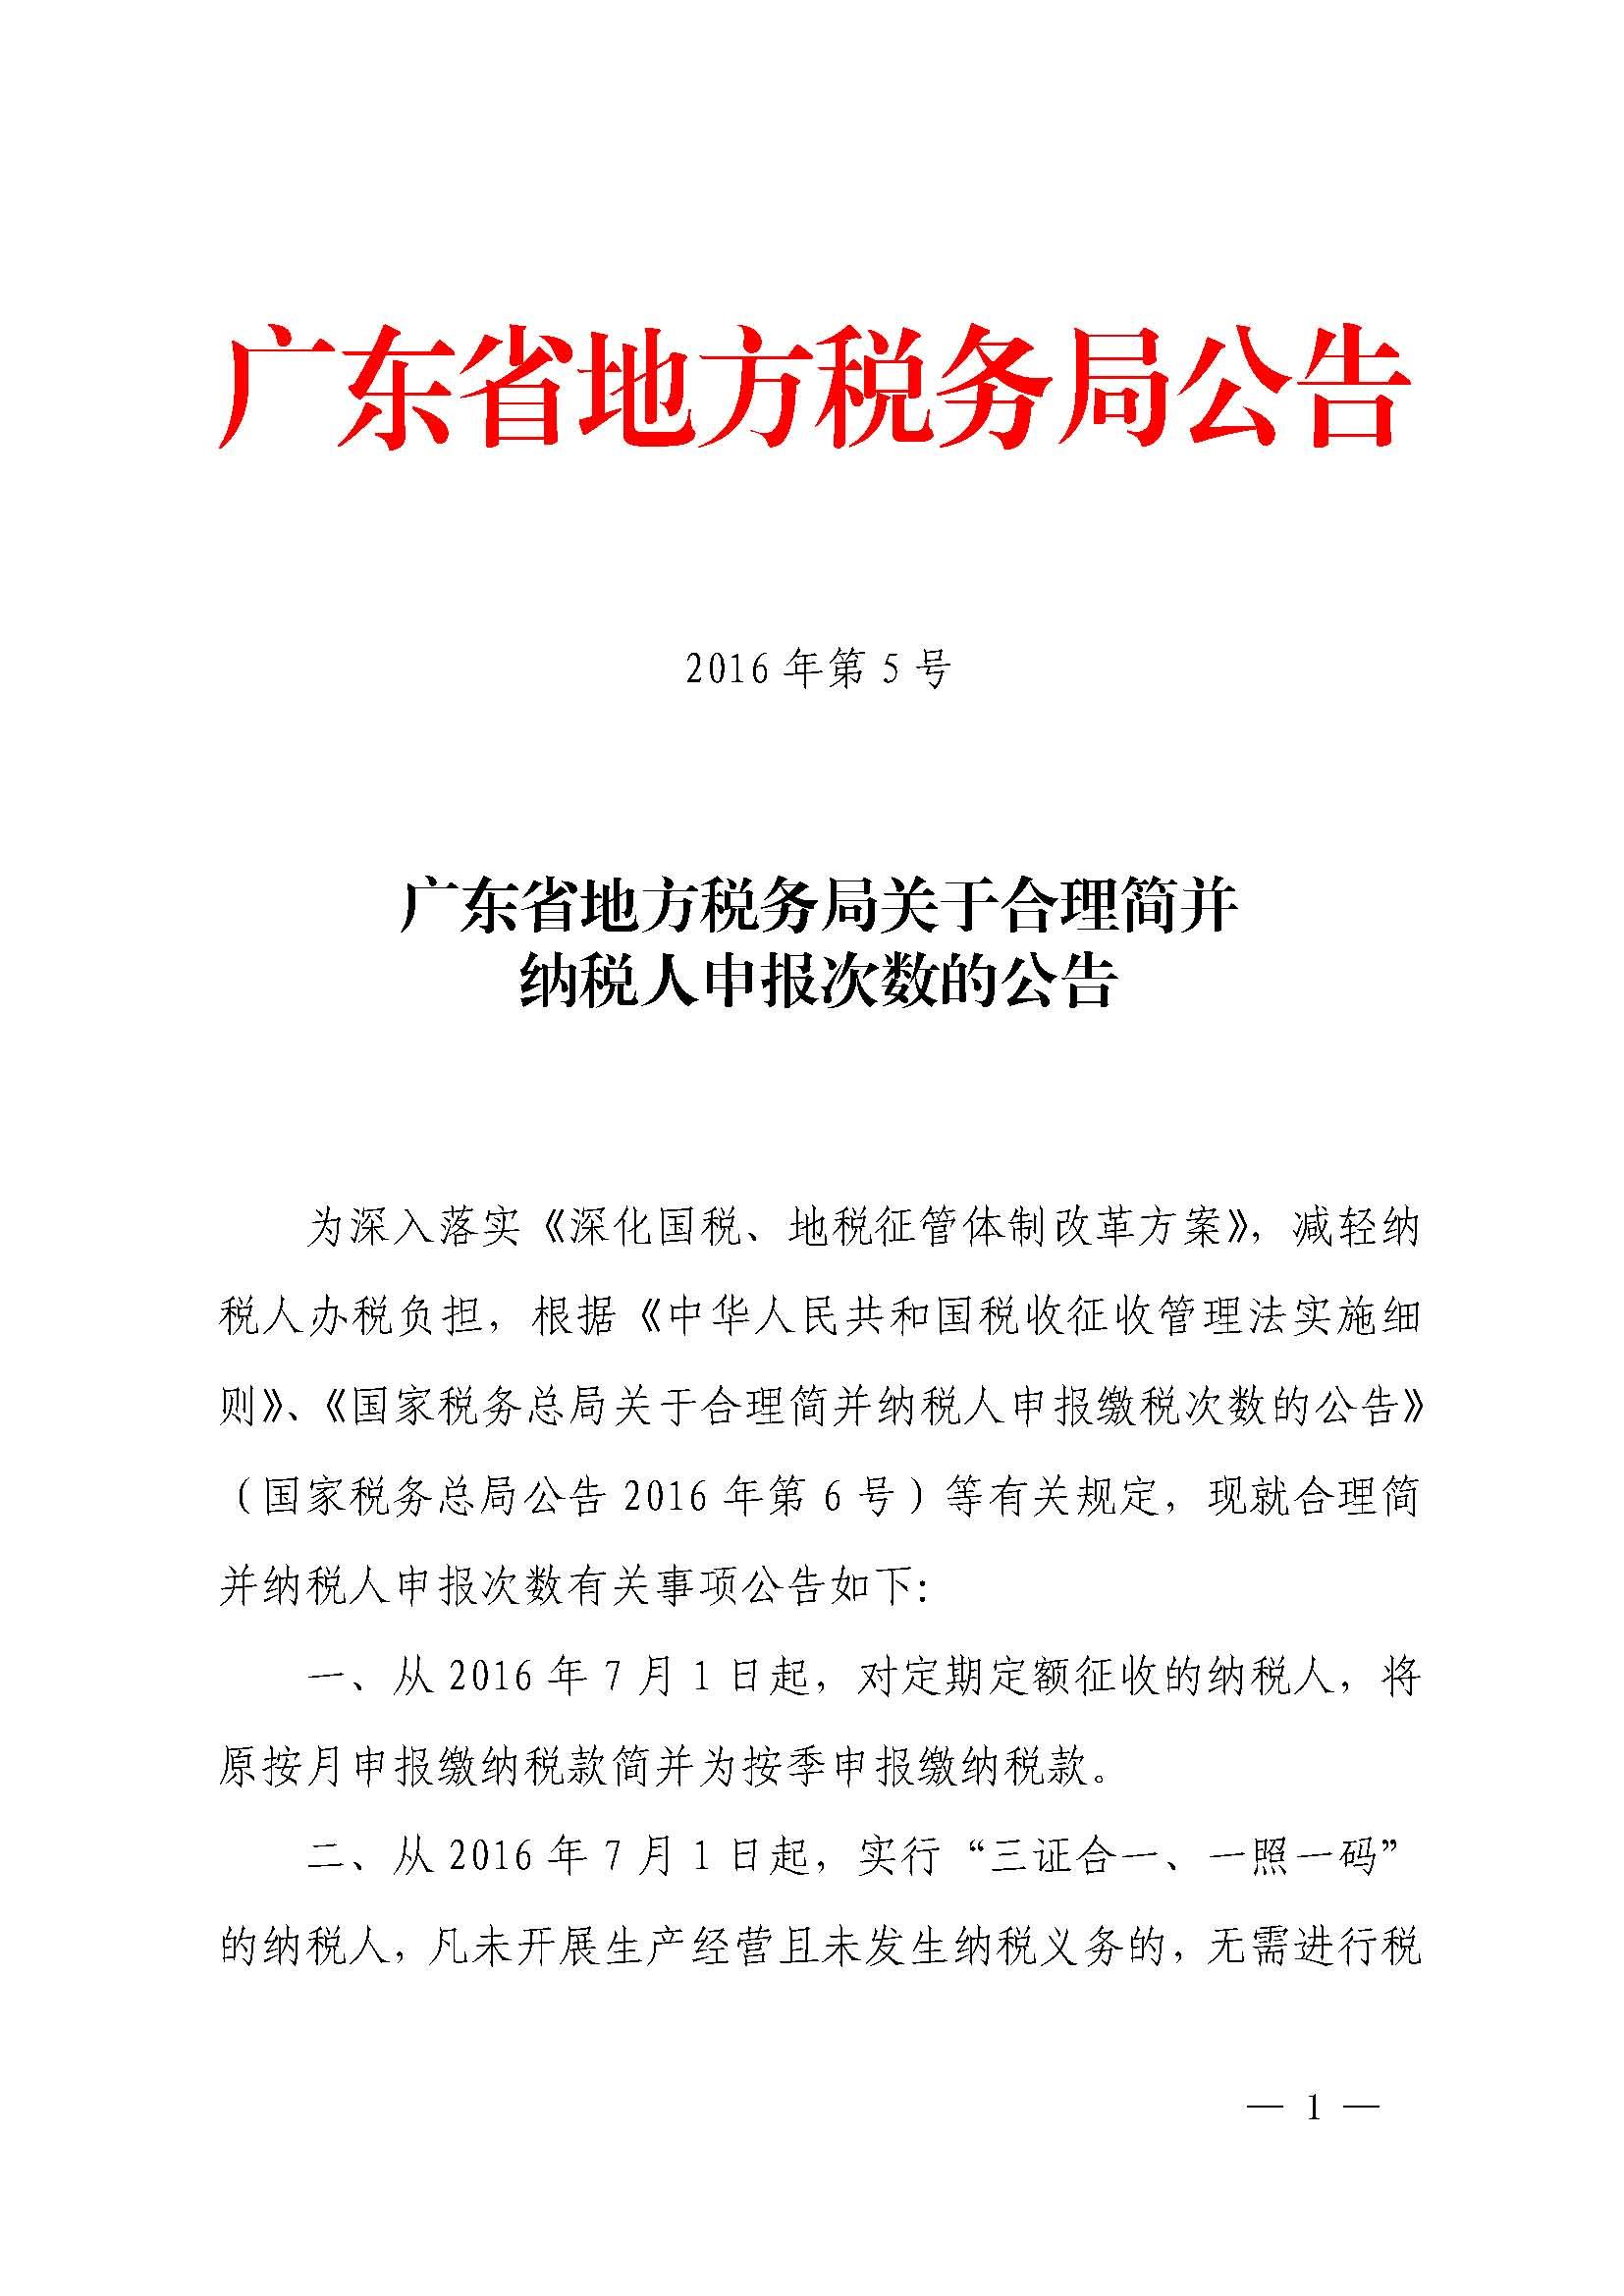 广东省地方税务局关于合理简并纳税人申报次数的公告_1